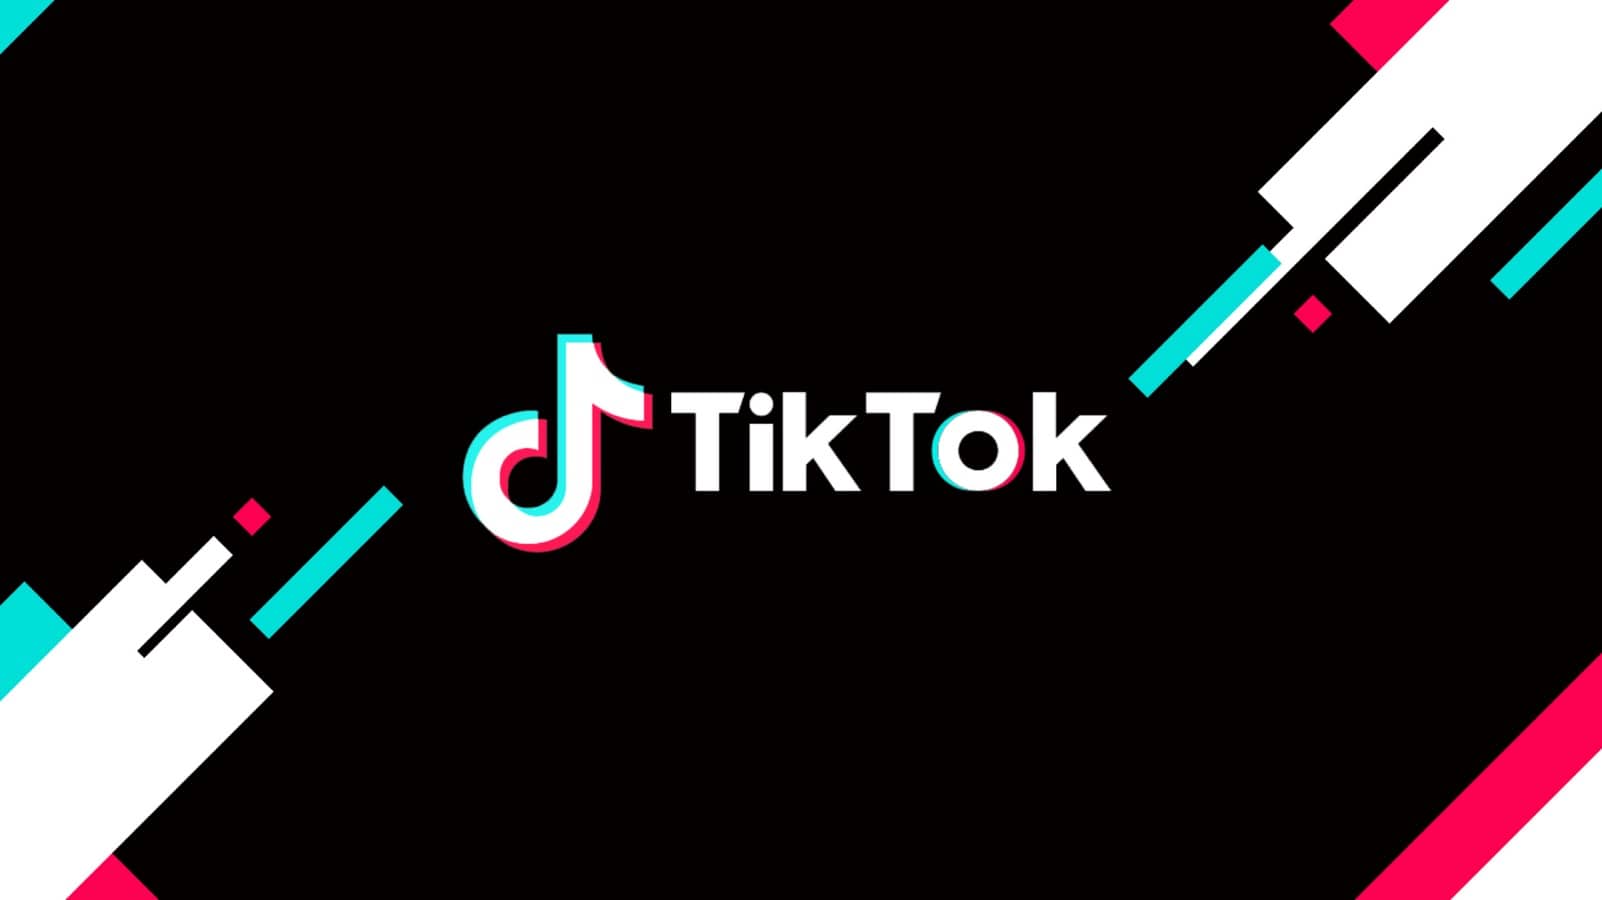 Criadores de conteúdo poderão lucrar mais no TikTok